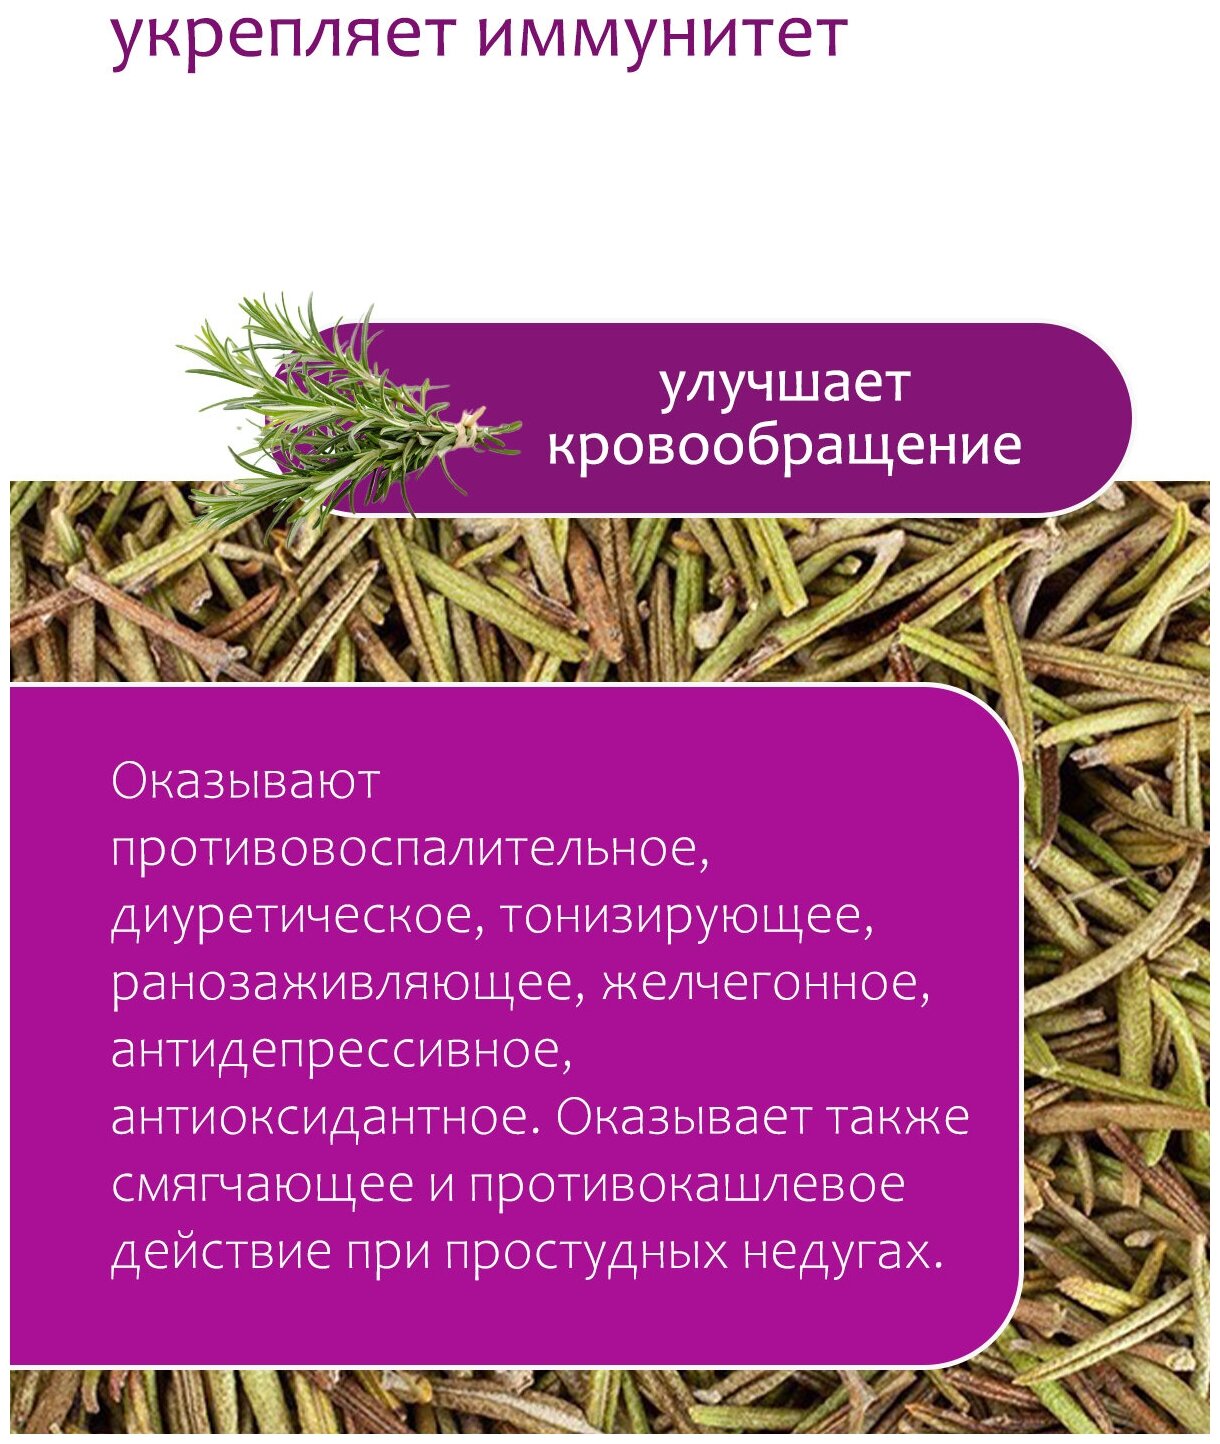 Розмарин сушеный Приправа Травяной чай сбор Травы горного Крыма, 50 гр